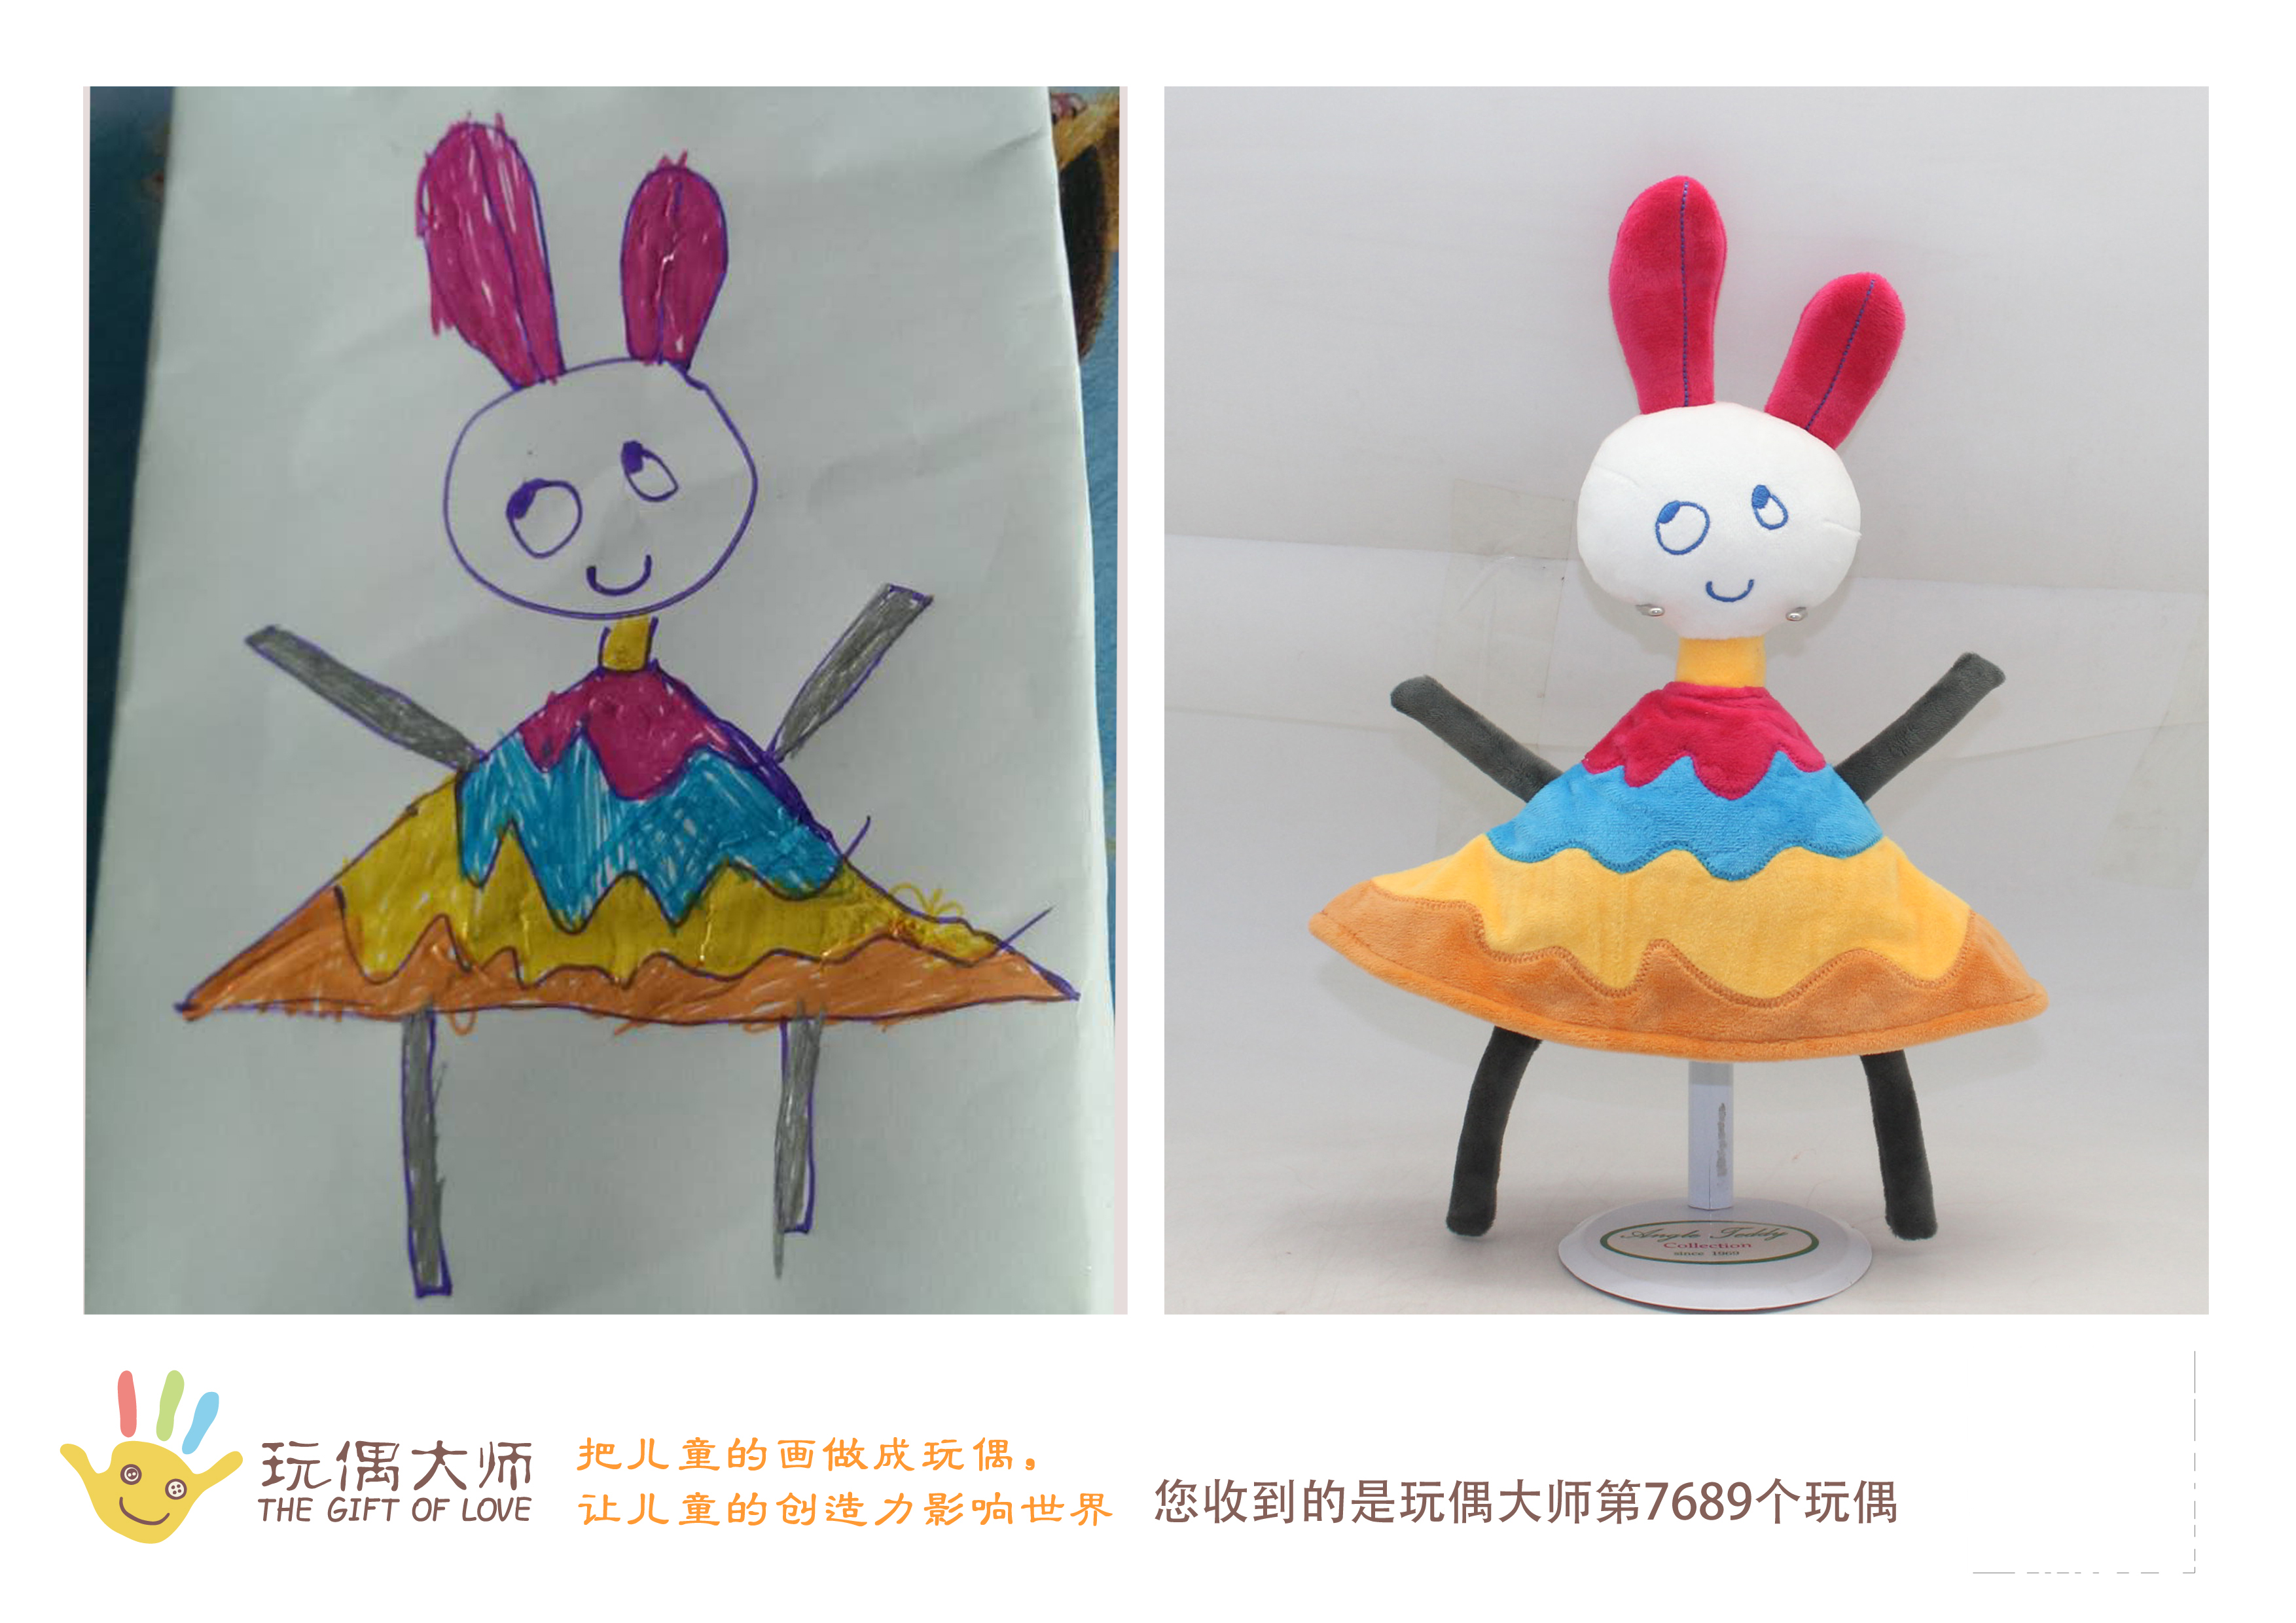 儿童绘画定制玩偶毛绒玩具,玩偶大师:把儿童的画做成玩偶,让儿童的